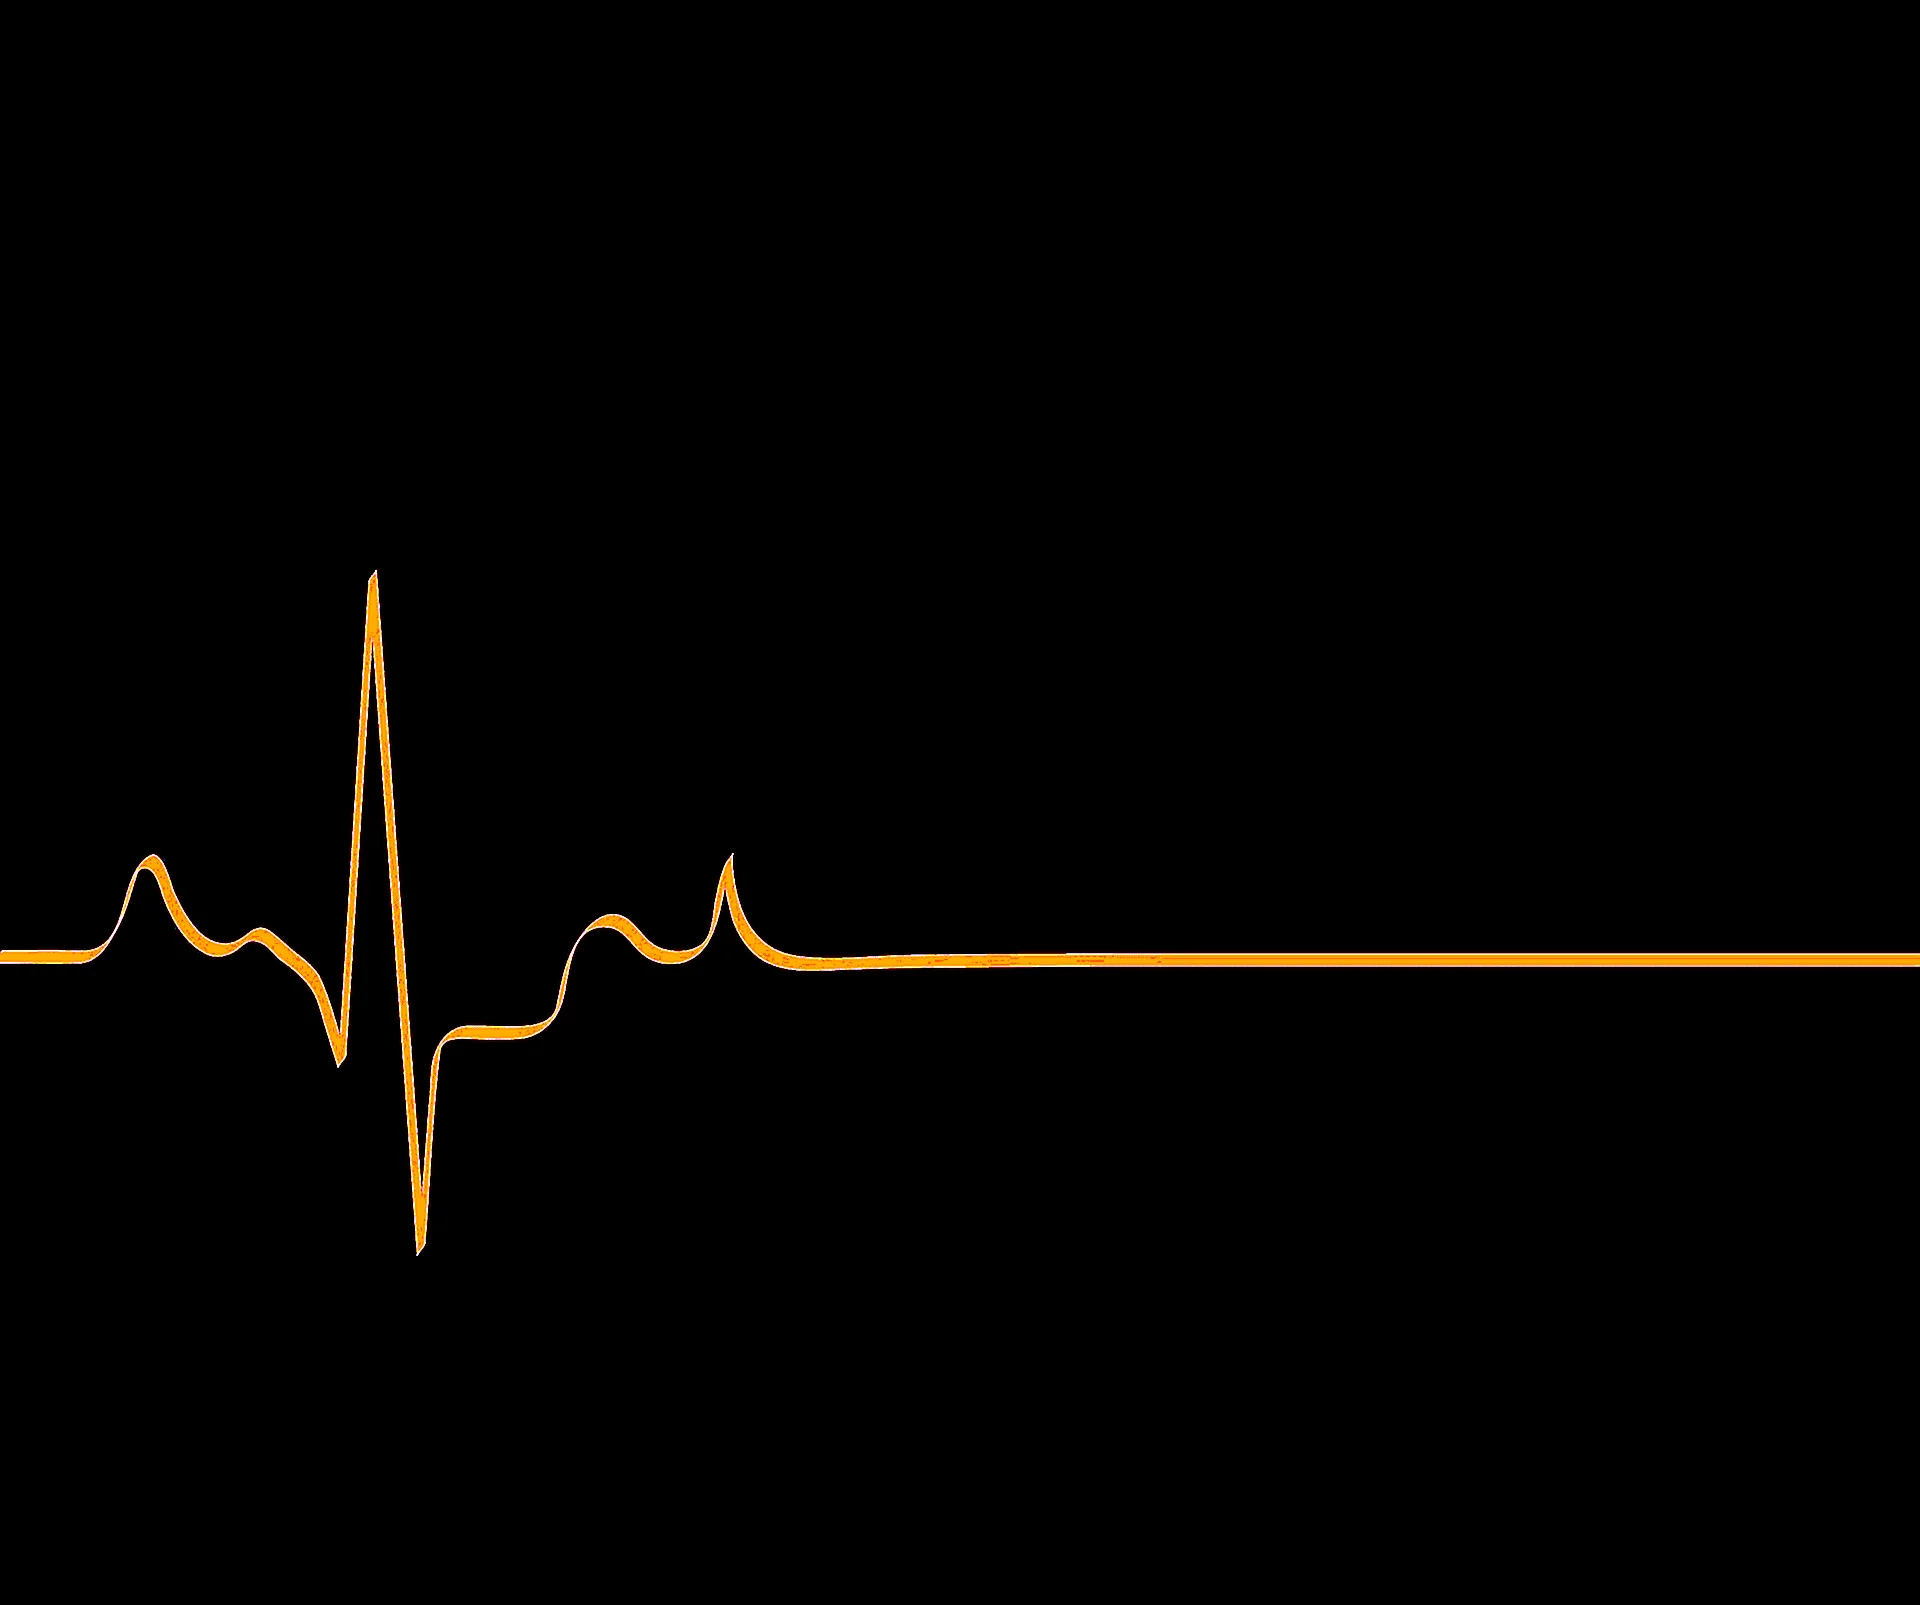 Сердце с линией кардиограммы